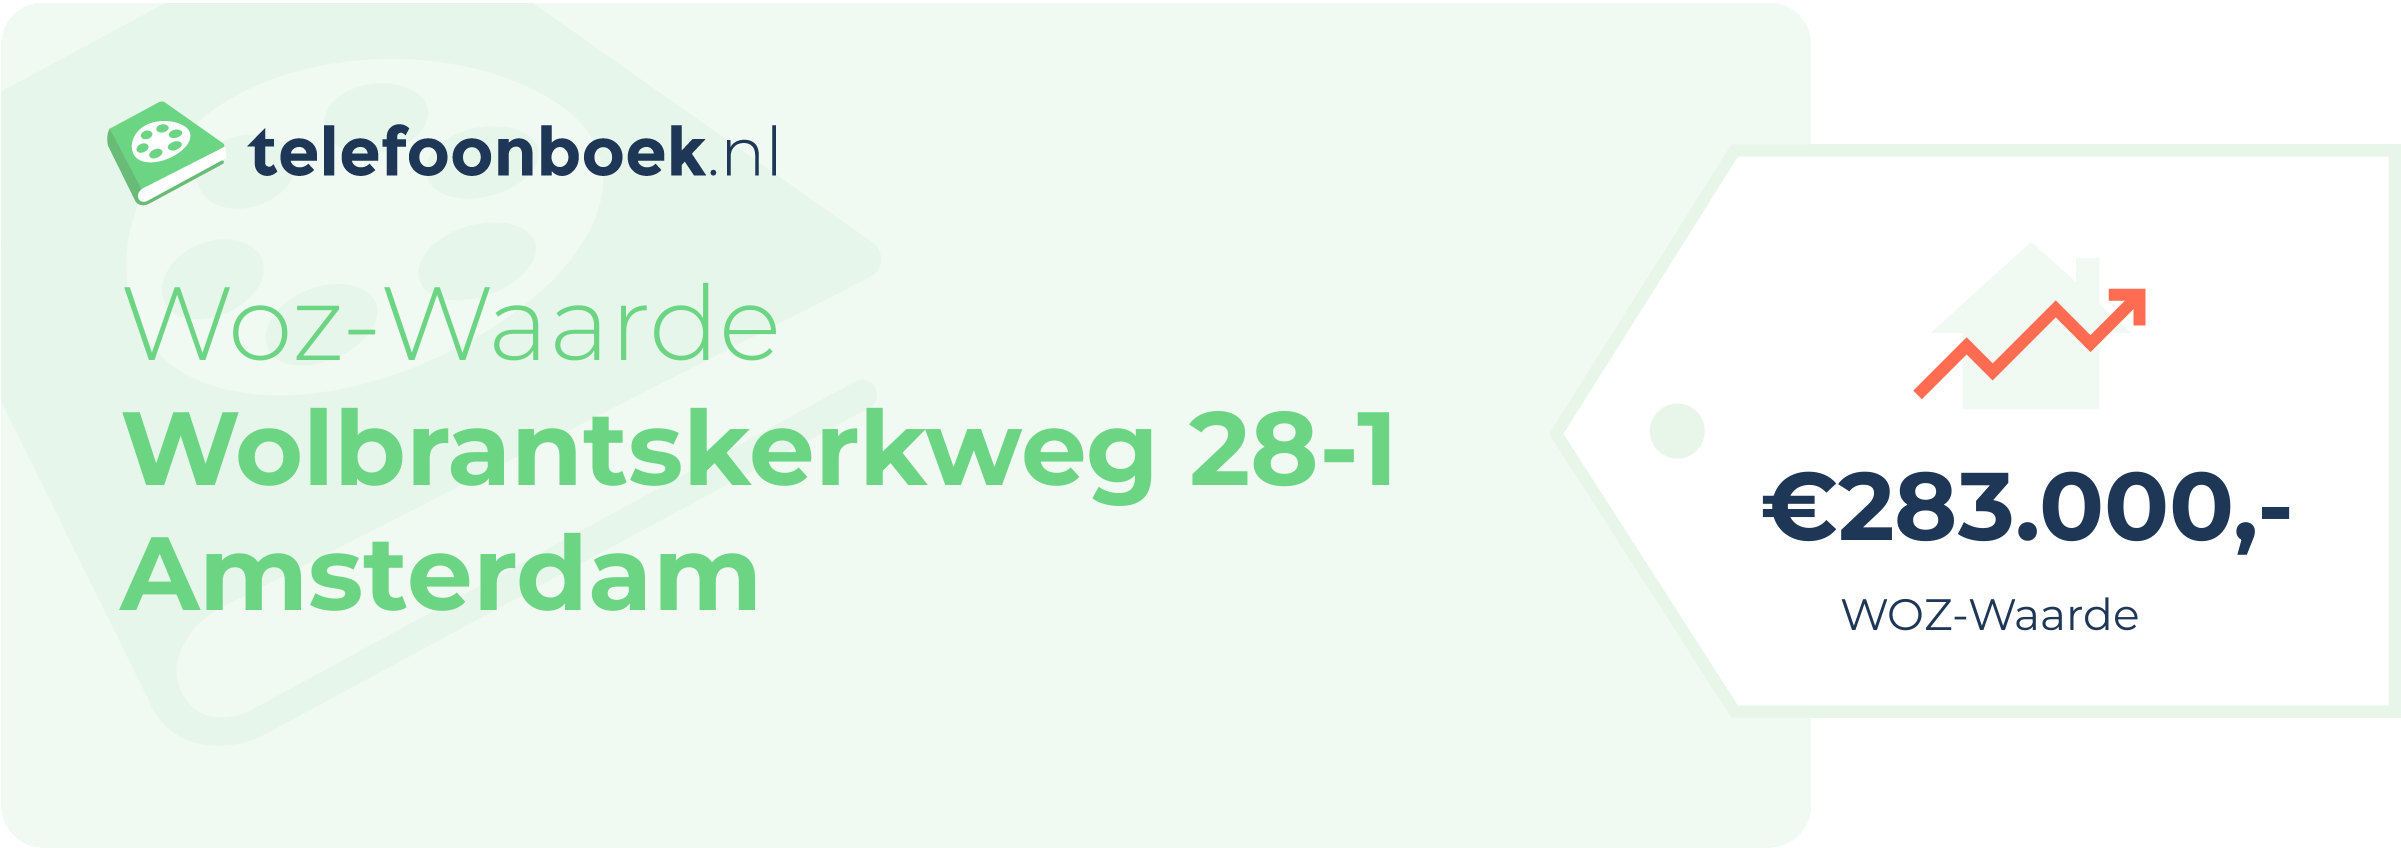 WOZ-waarde Wolbrantskerkweg 28-1 Amsterdam